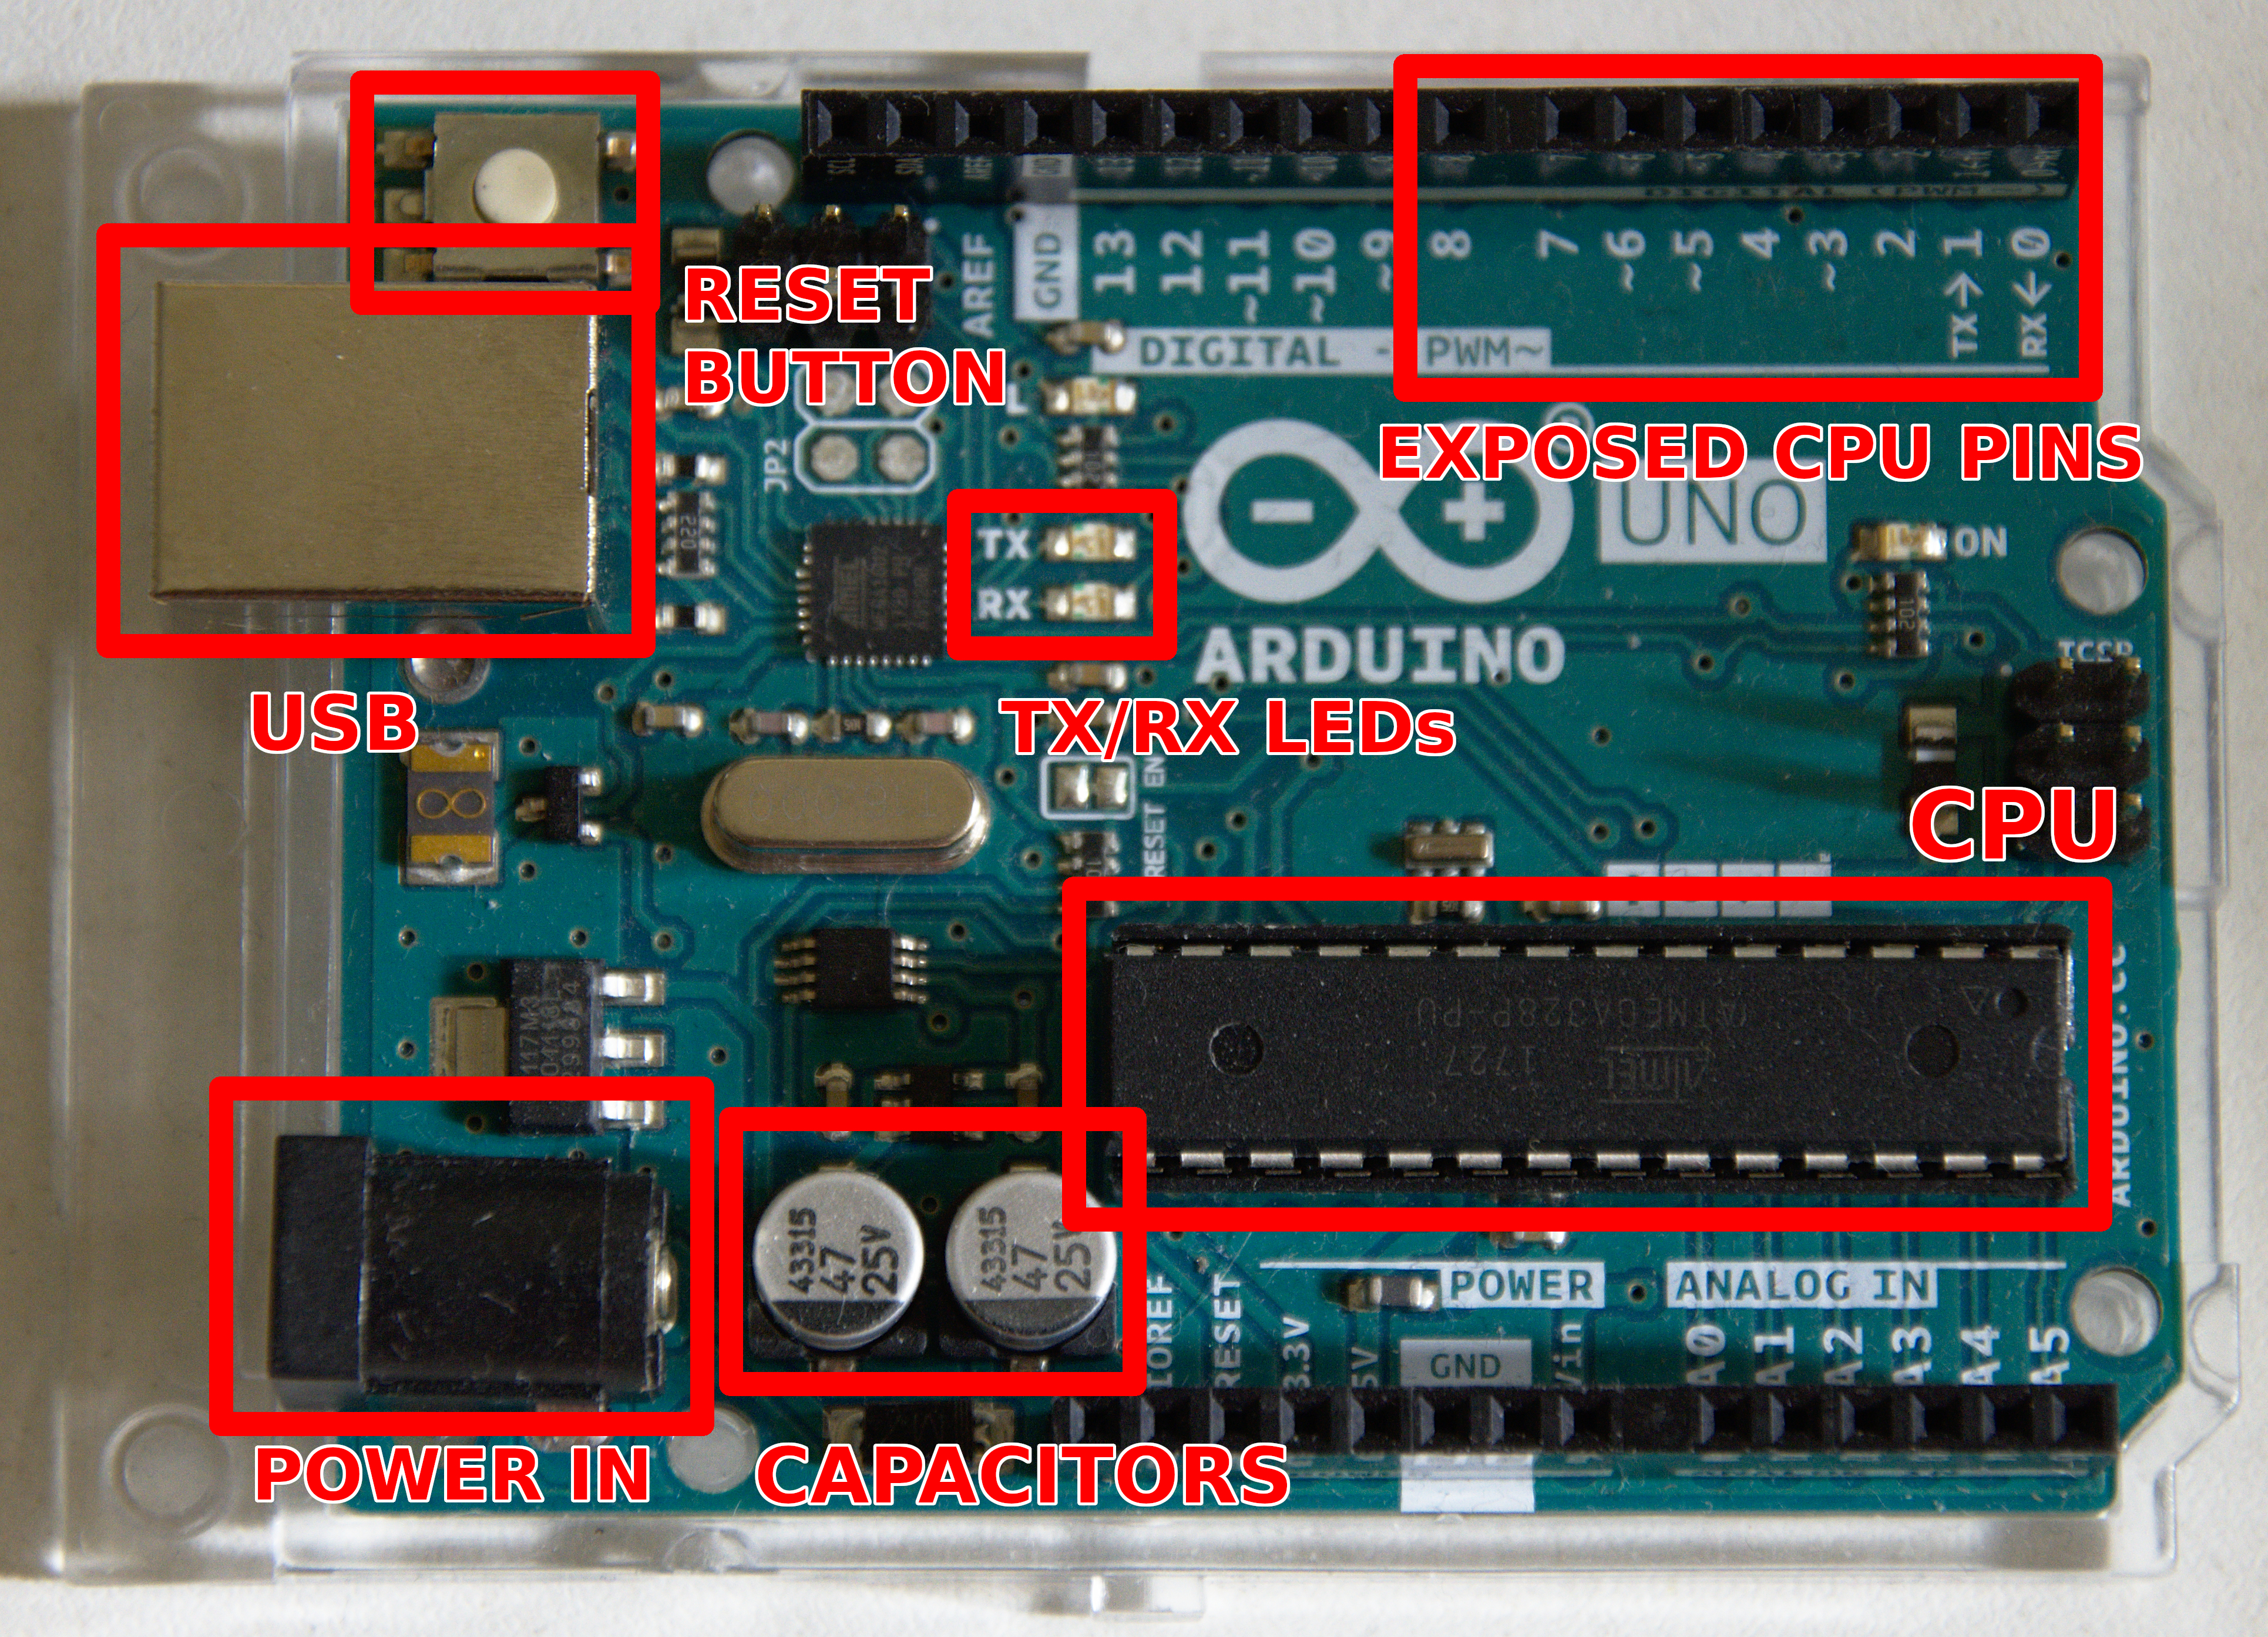 Annotated Arduino Uno board